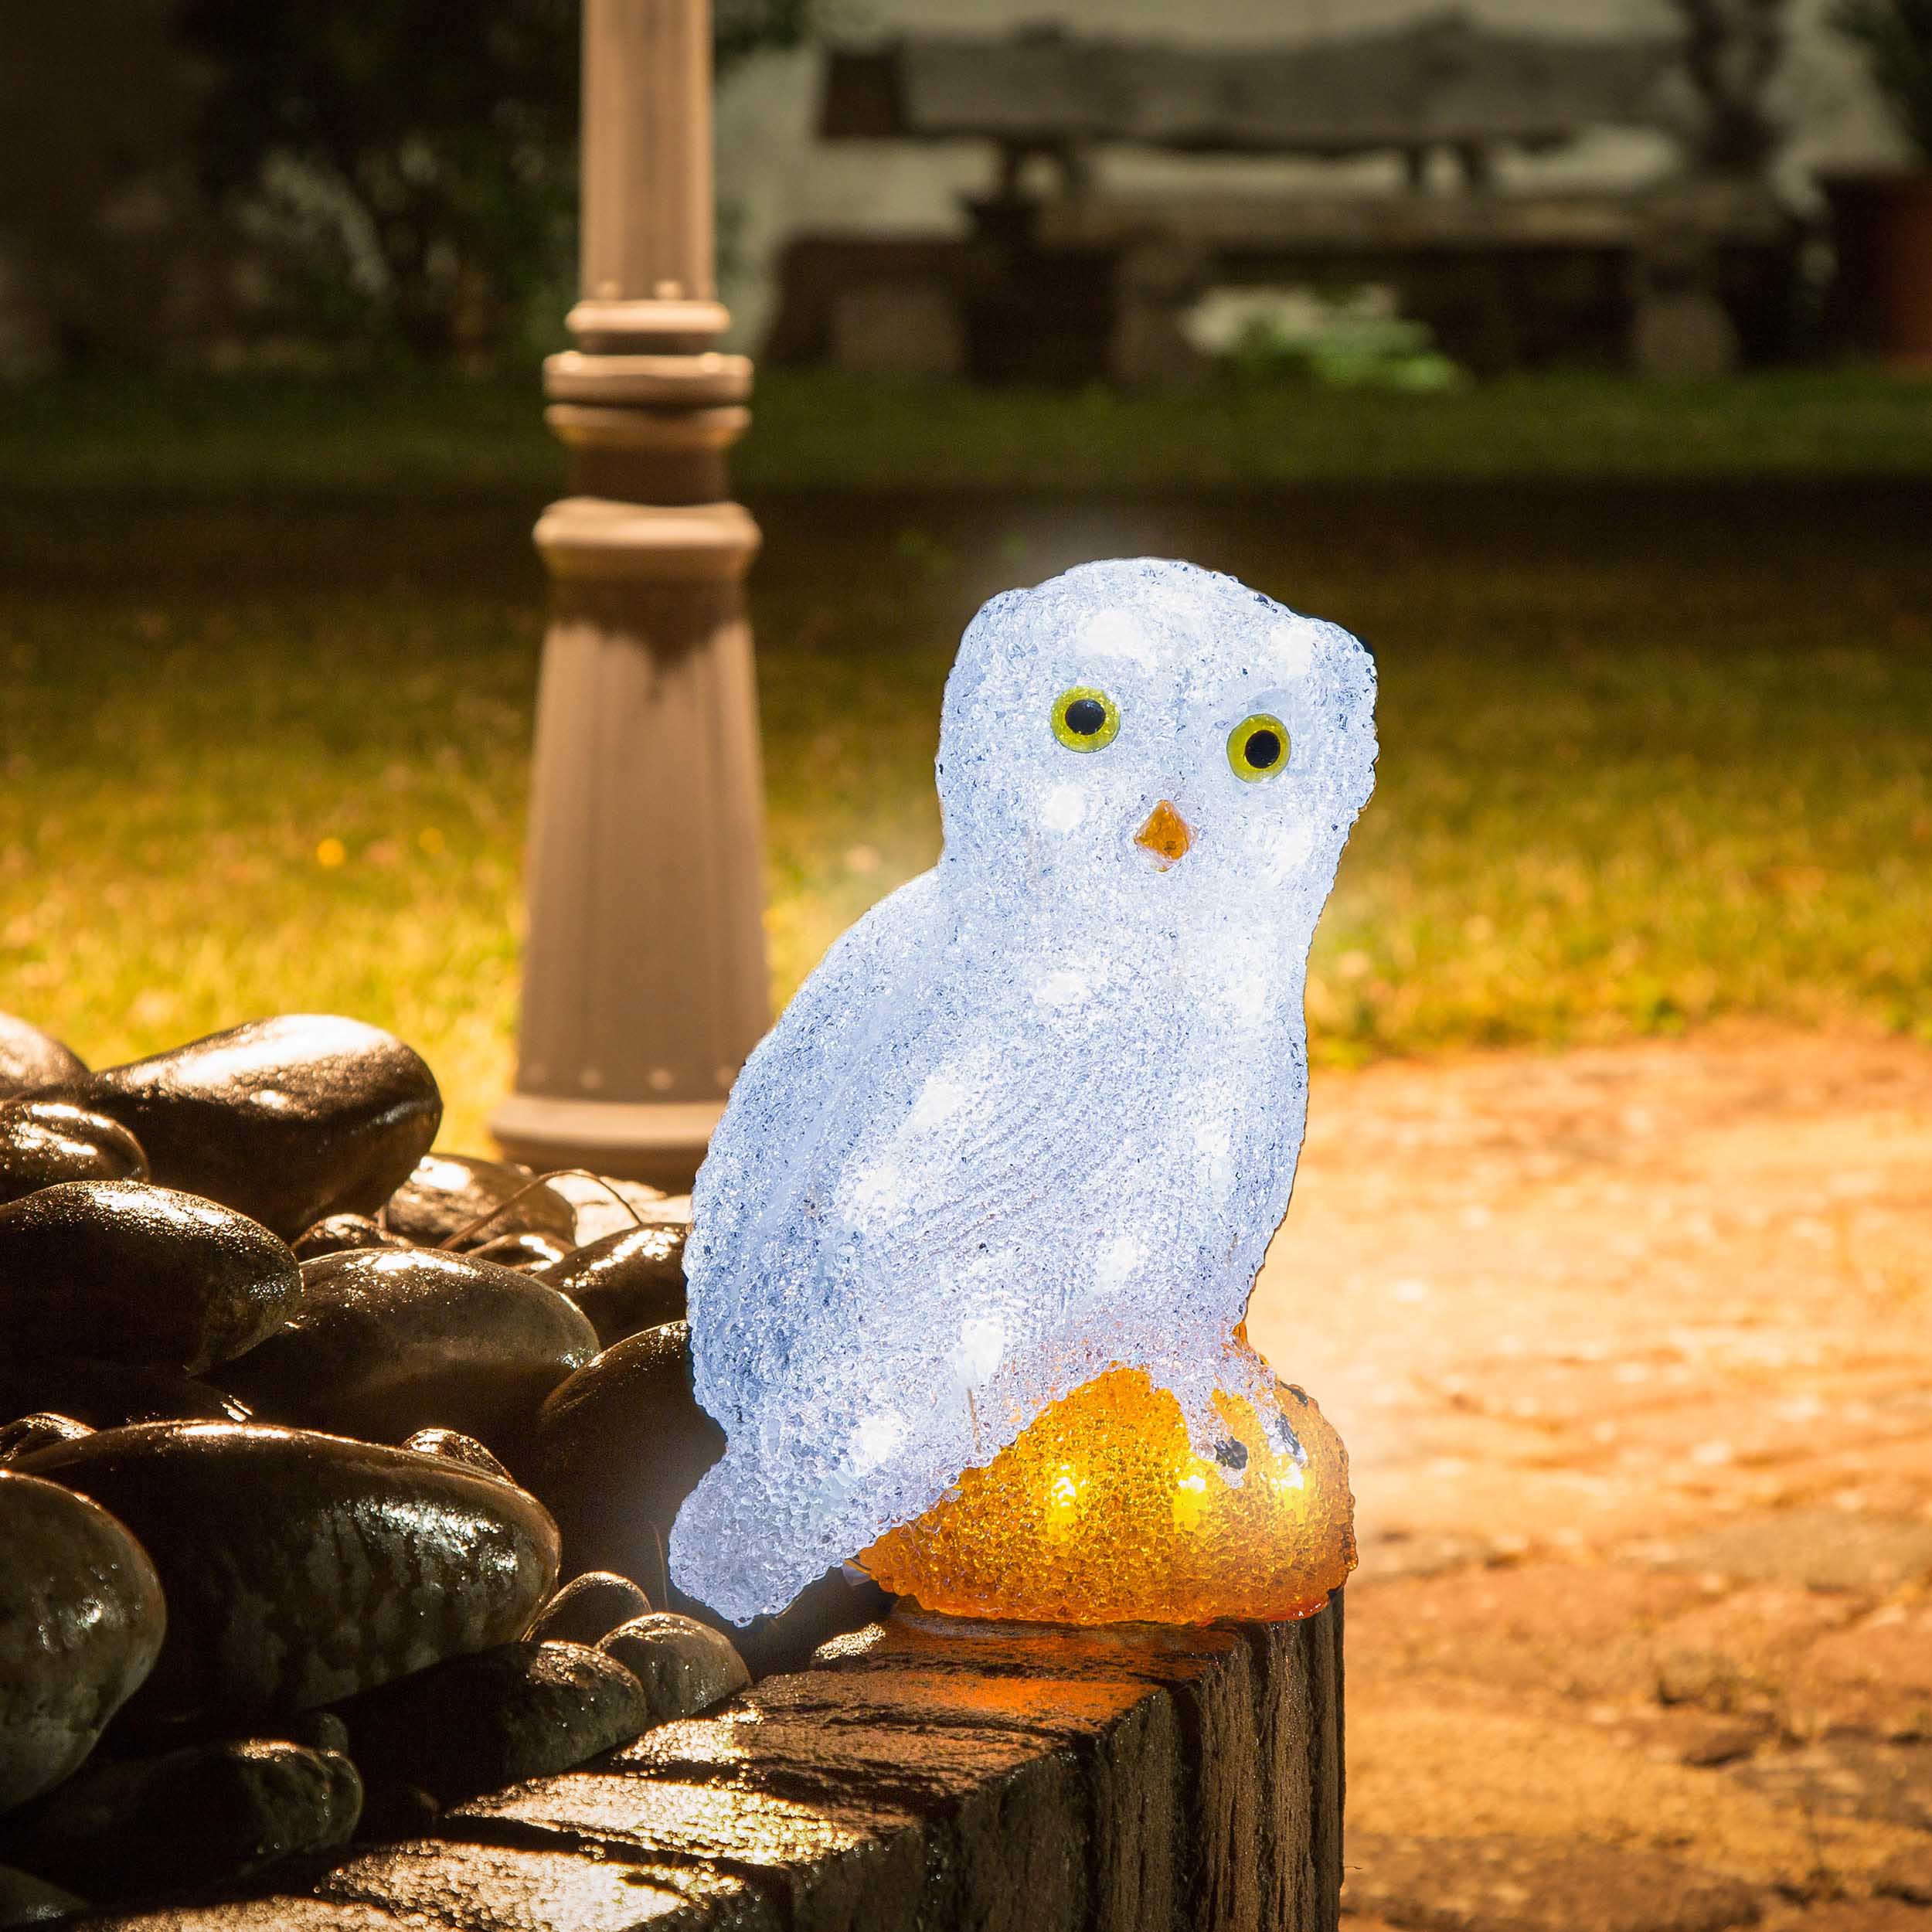 Acrylic LED owl, 32 coldwhite LEDs